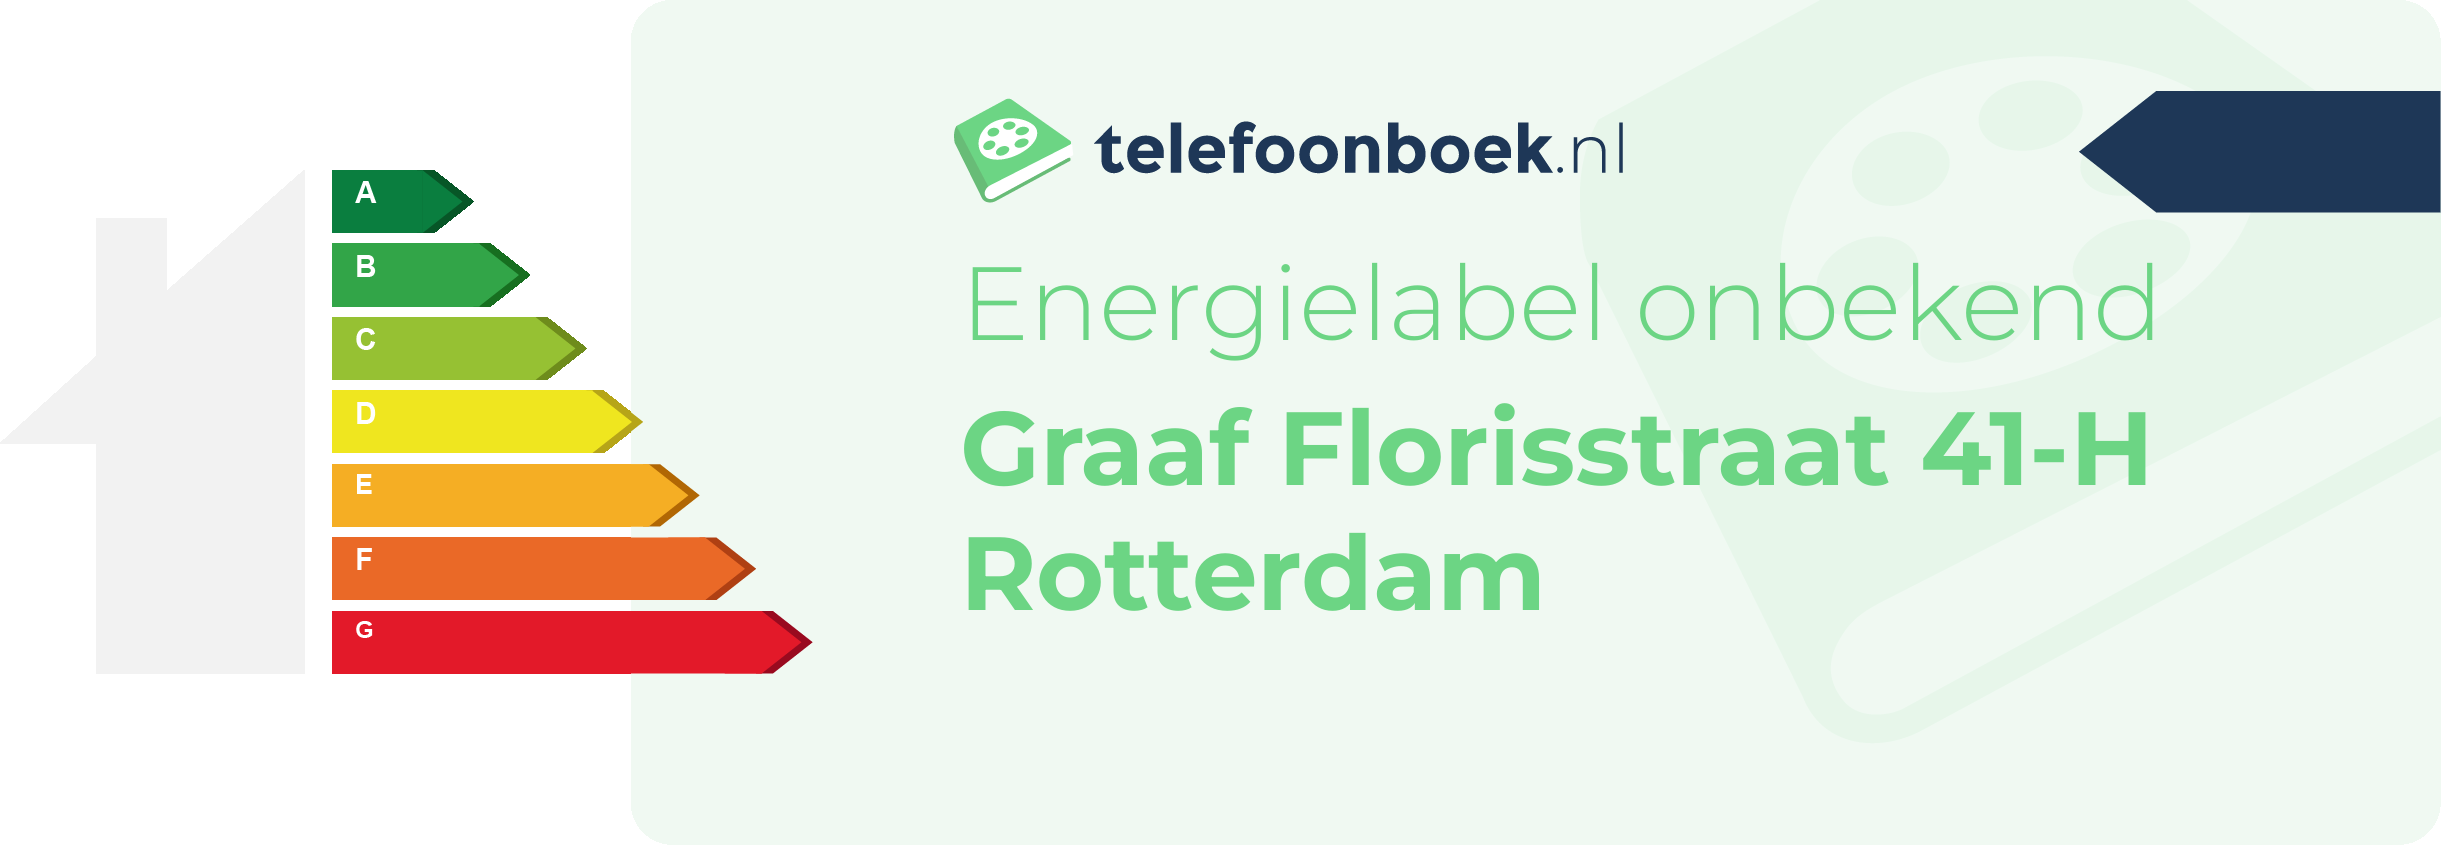 Energielabel Graaf Florisstraat 41-H Rotterdam